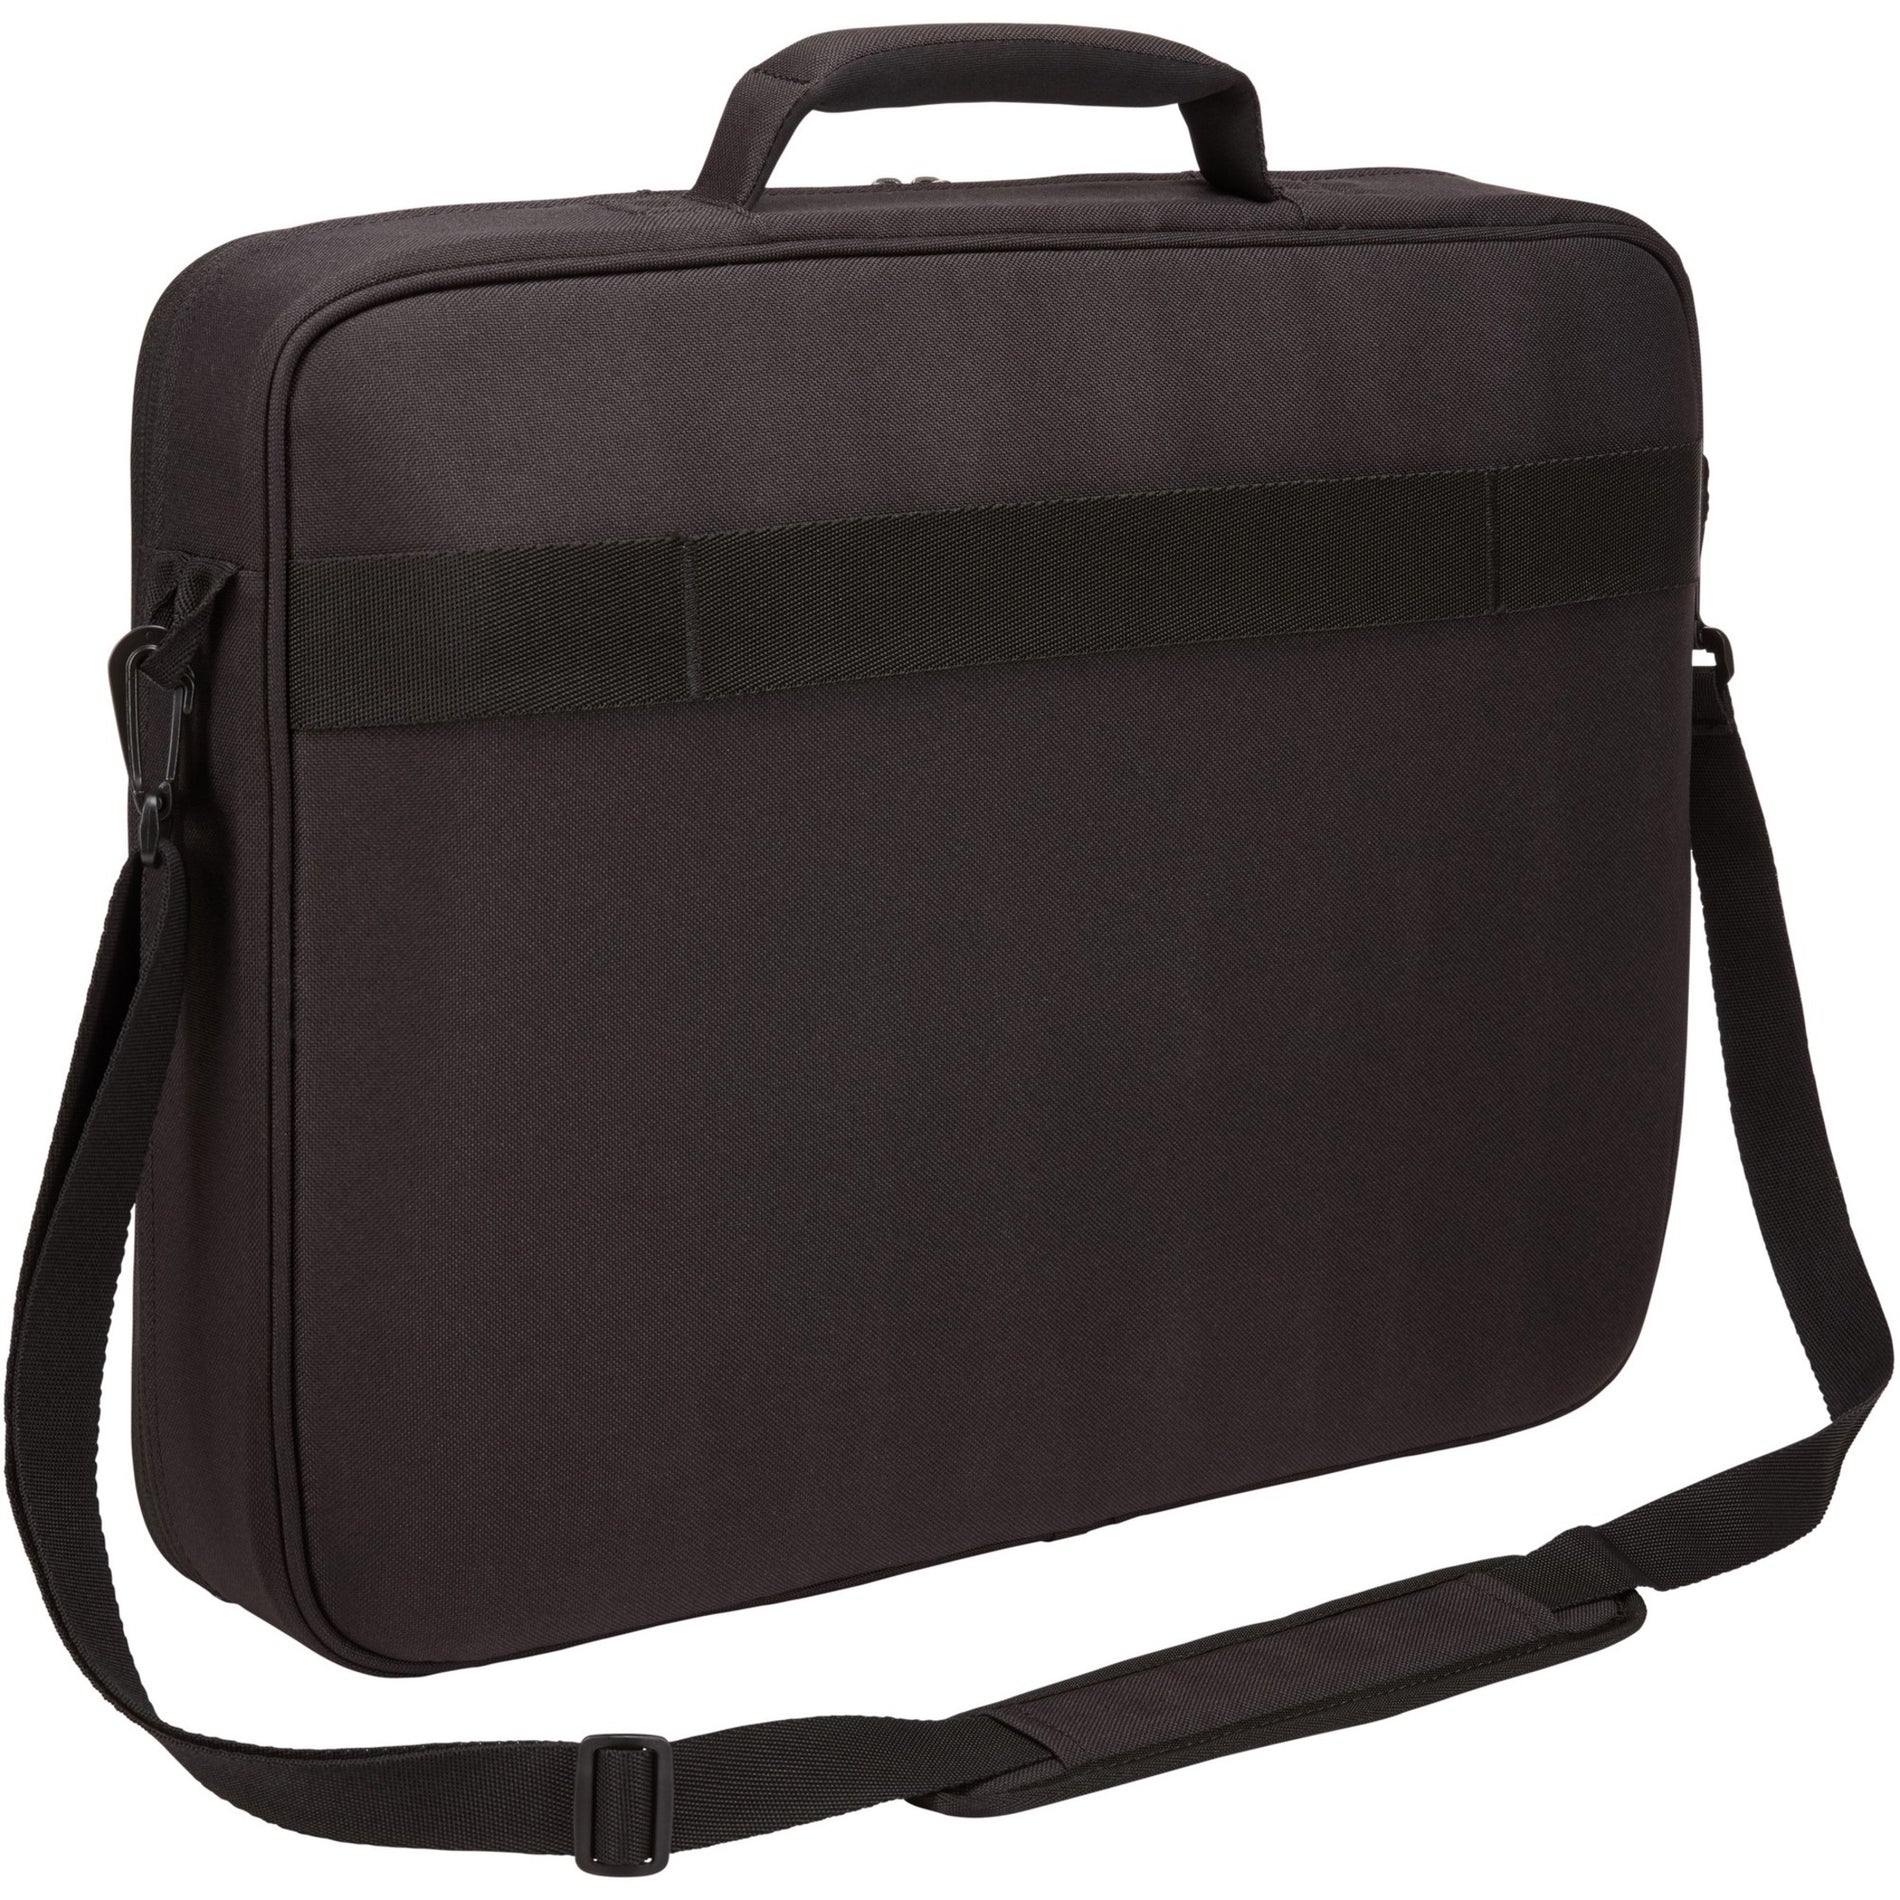 Case Logic 3203991 Advantage 17.3" Laptop Briefcase, Black